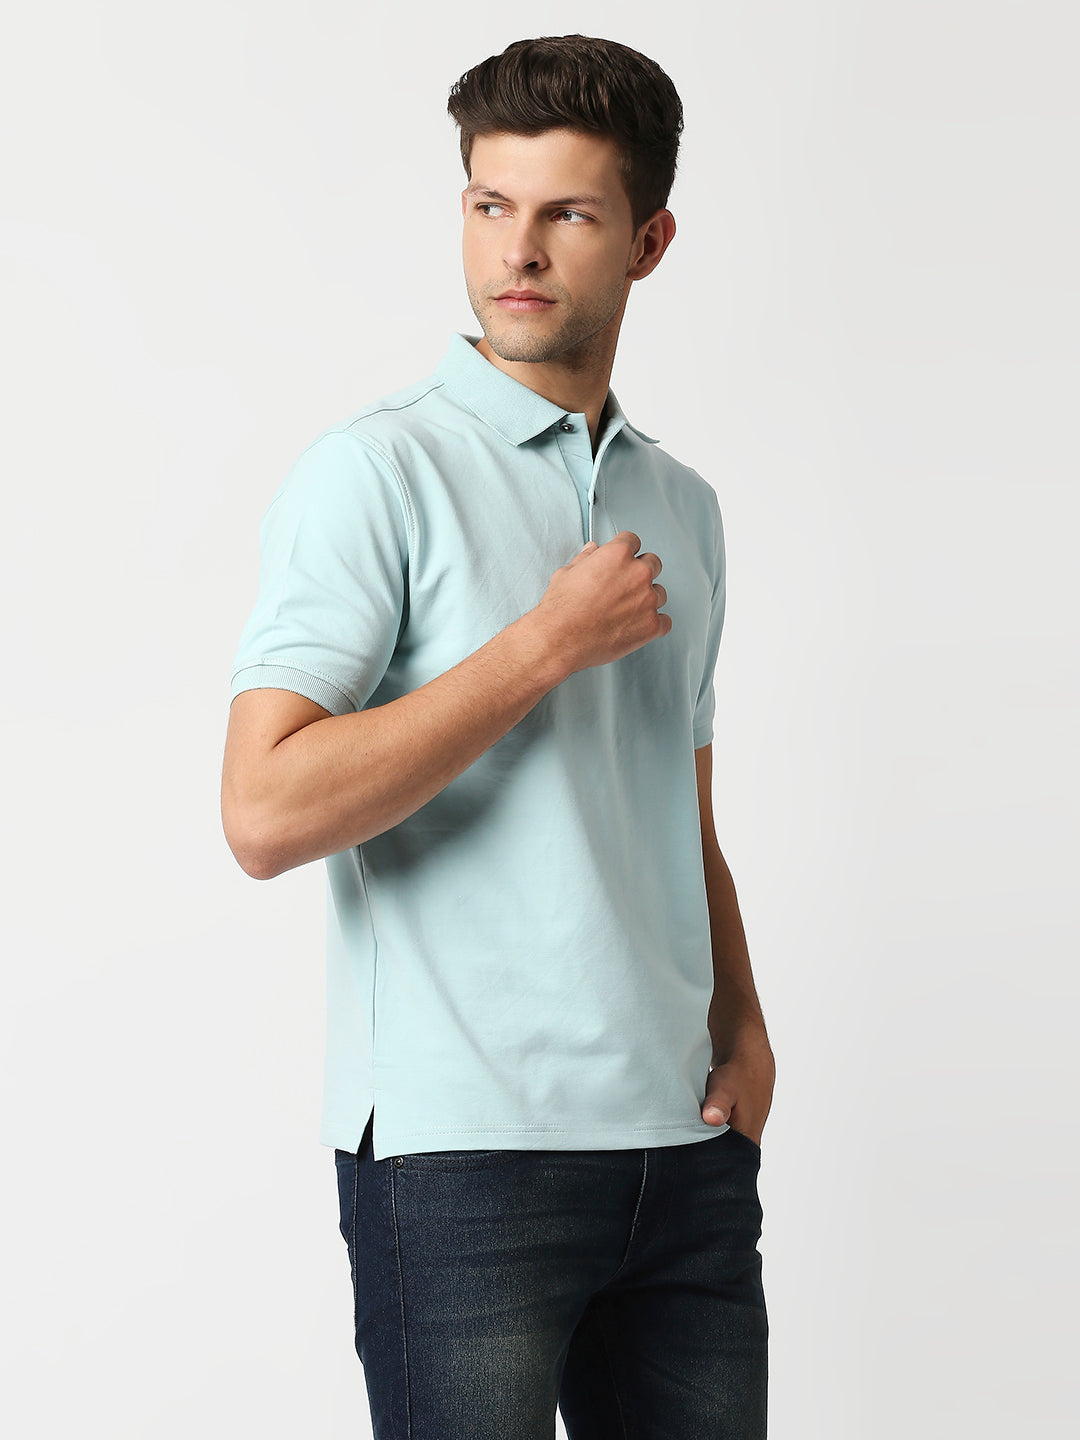 Buy Blamblack Men's Polo Plain Aqua Color T shirt